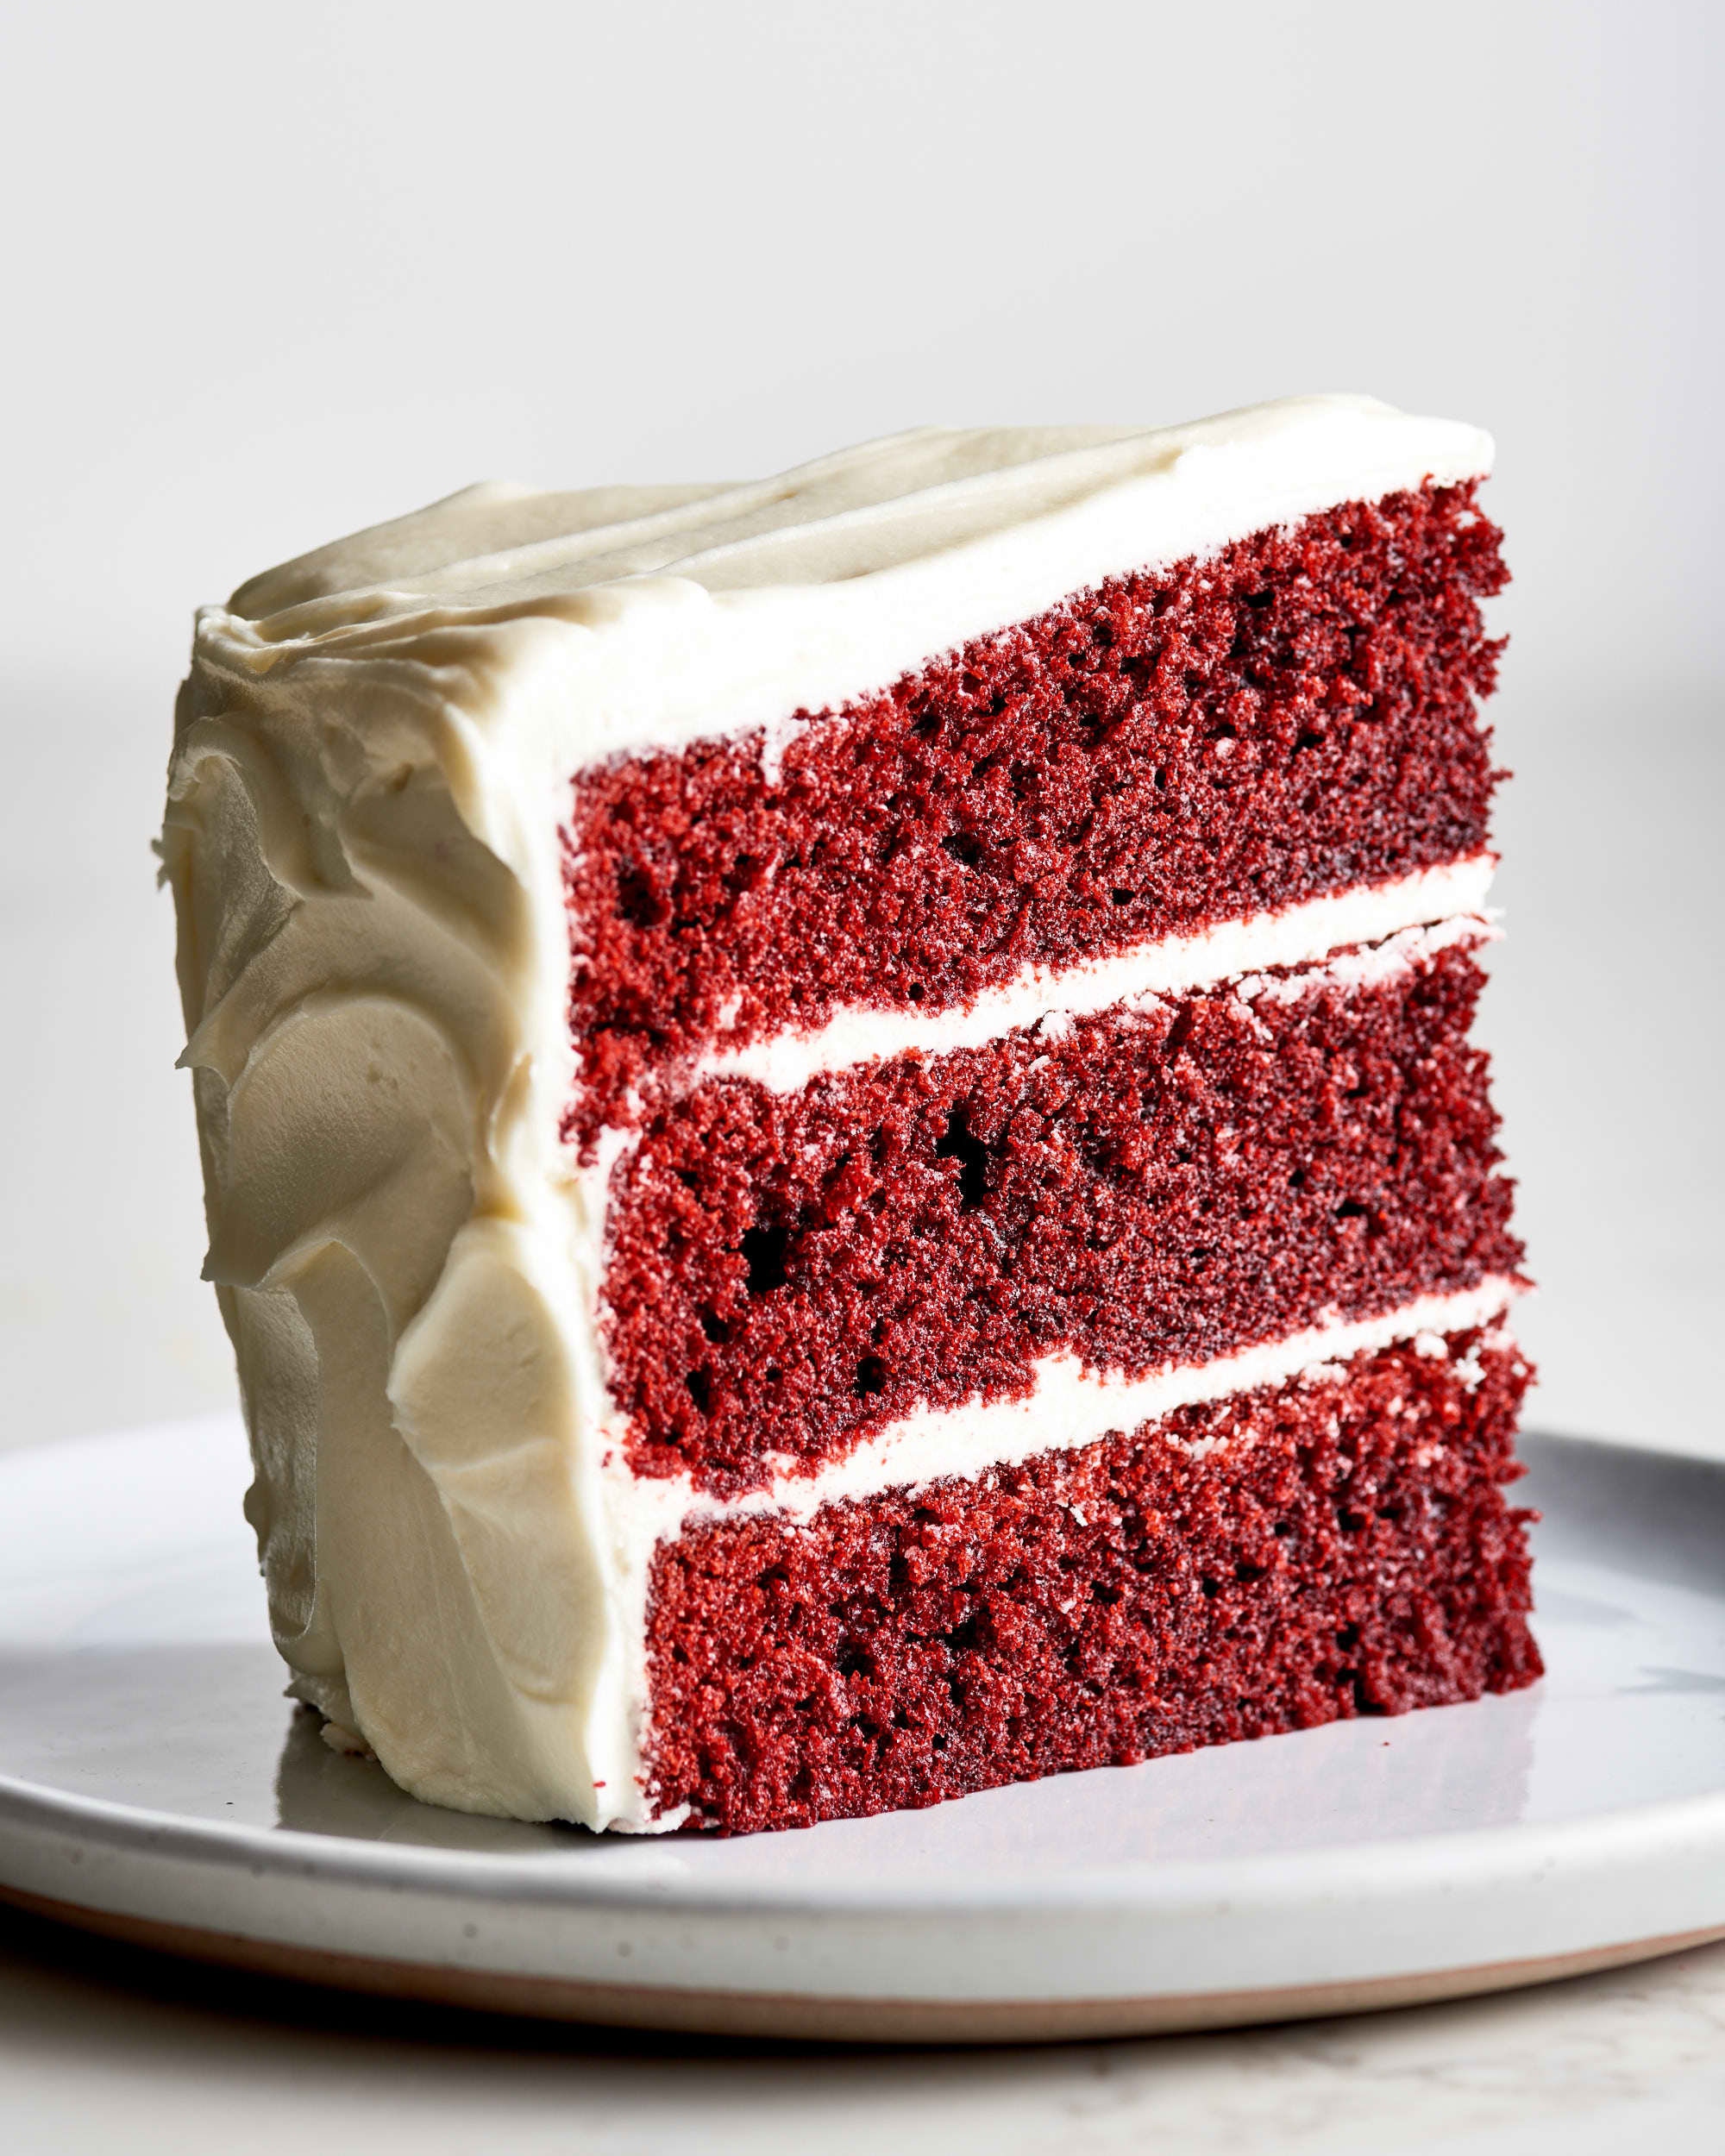 https://cdn.apartmenttherapy.info/image/upload/v1642797294/k/Photo/Series/2022-01_Recipe-Showdown_Red-Velvet-Cake/2022-01_Recipe-Showdown_Red-Velvet-Cake_Smitten-Kitchen-2022-01-20_ATK0043.jpg